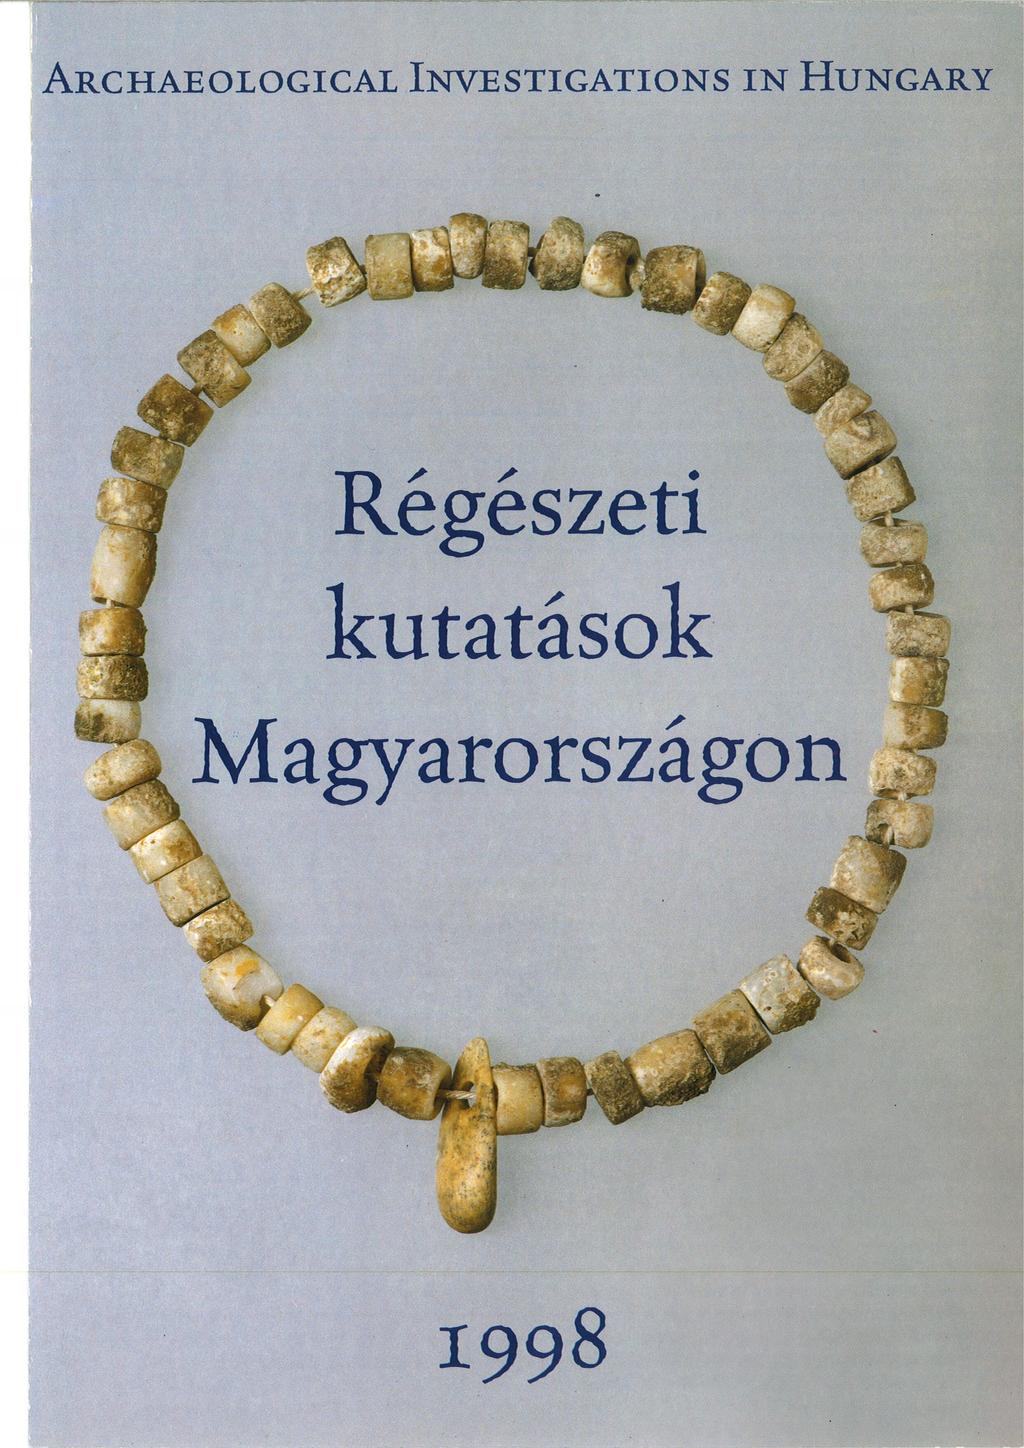 Régészeti Kutatások Magyarországon Archaeological lnvestigations in Hungary  PDF Free Download